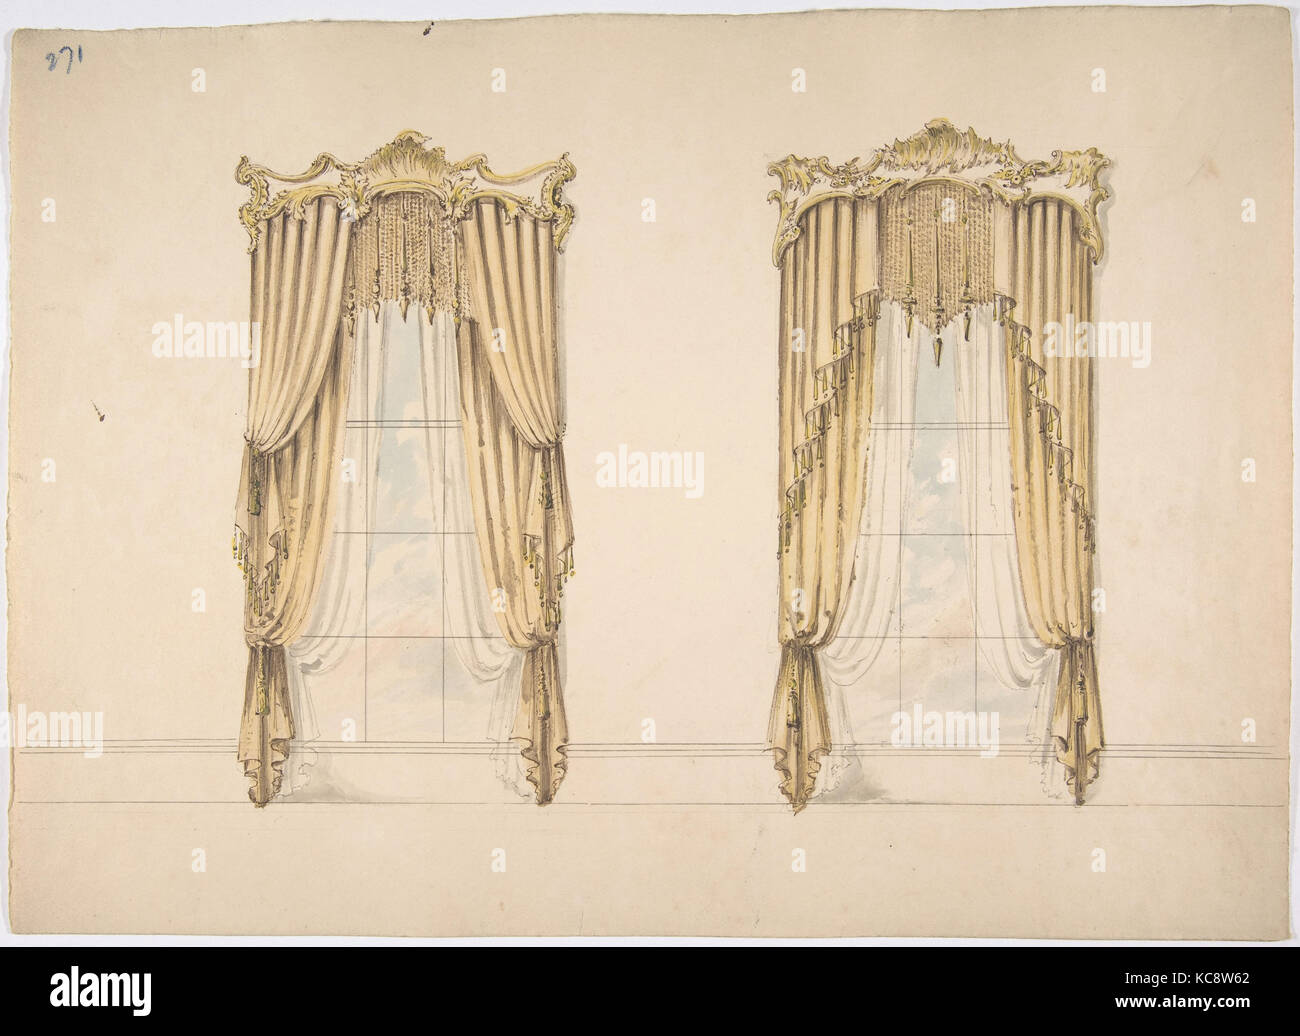 Pour la conception de rideaux d'or avec de l'or et de franges d'or et d'un fronton blanc, anonyme, britannique, 19ème siècle, début du xixe siècle Banque D'Images